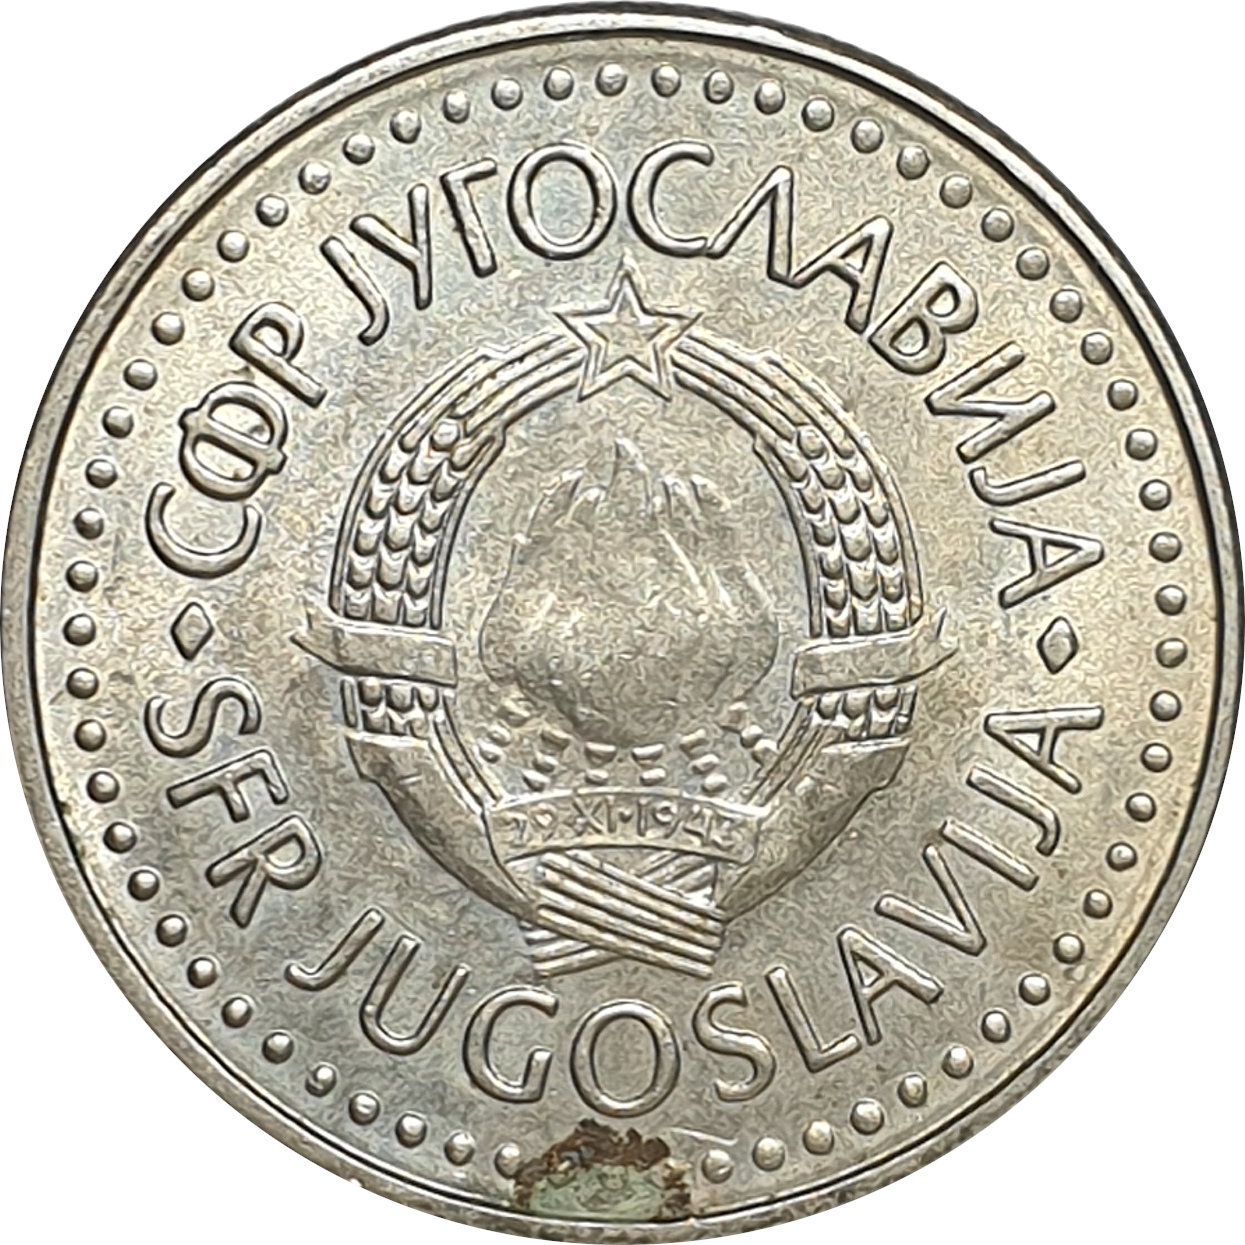 50 dinara - Emblème - Série 1985